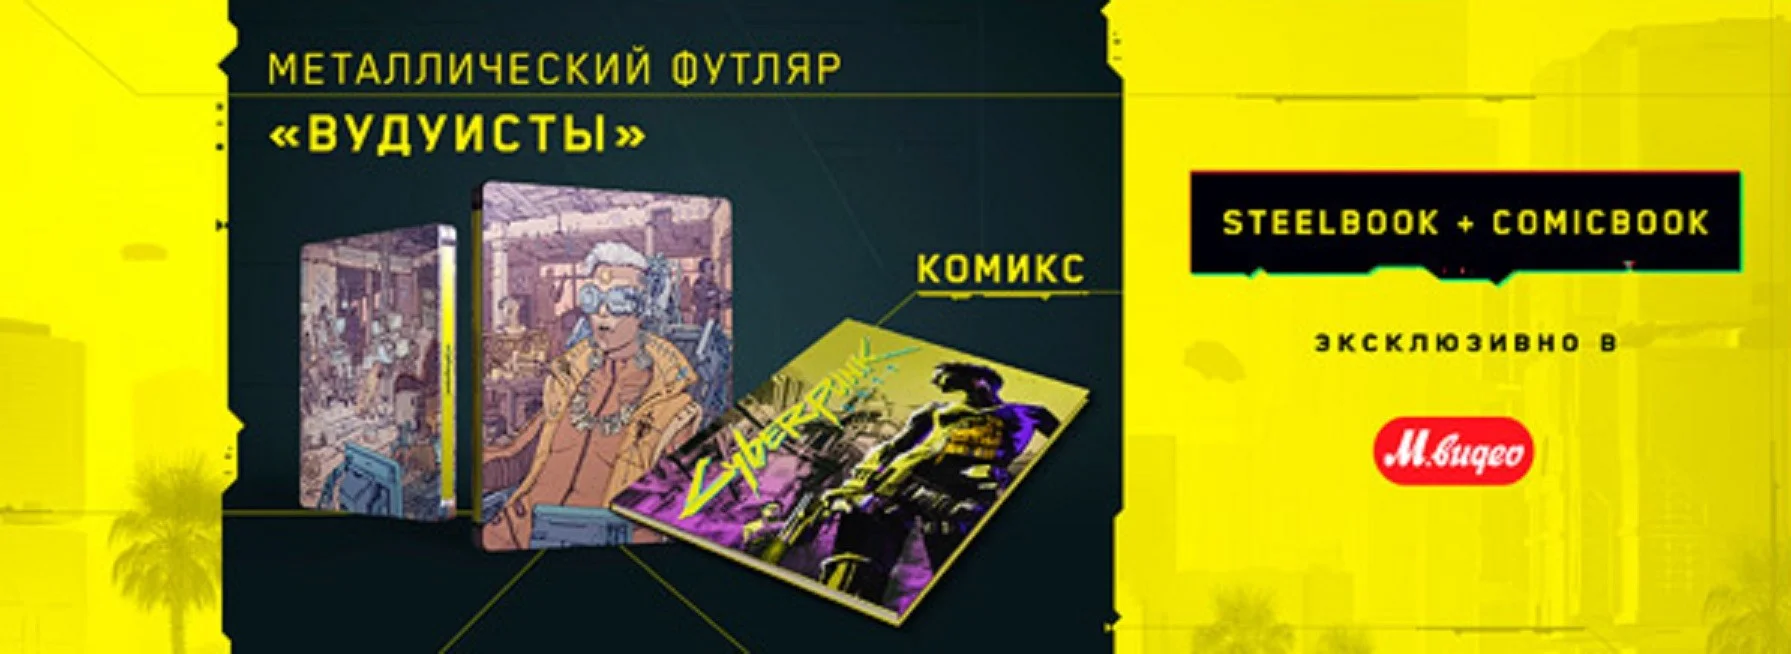 Российские магазины получили эксклюзивные стилбуки Cyberpunk 2077 - фото 2